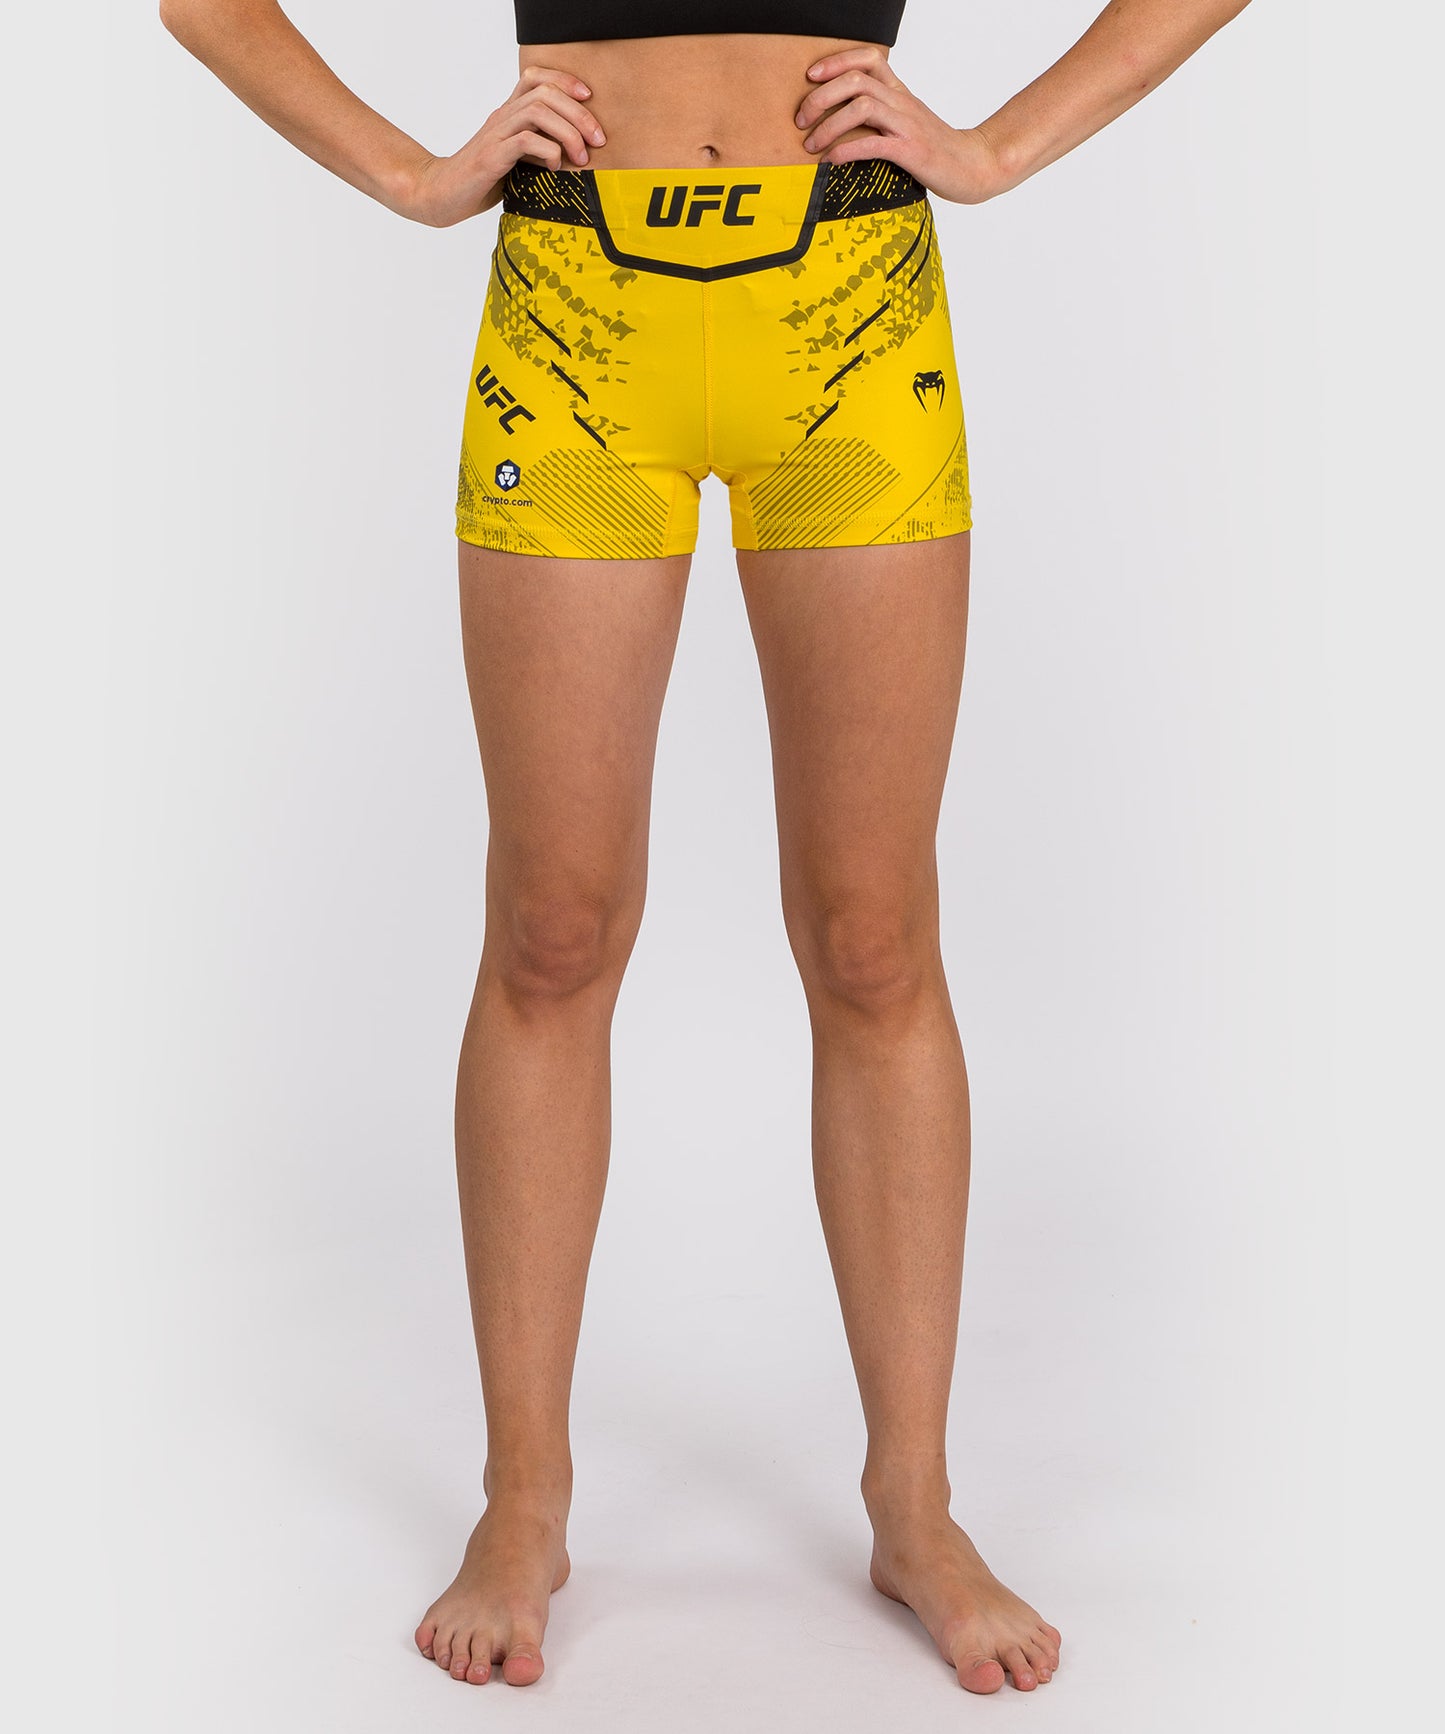 UFC Adrenaline by Venum Authentic Fight Night Vale Tudo Short für Frauen - kurze Passform - Gelb